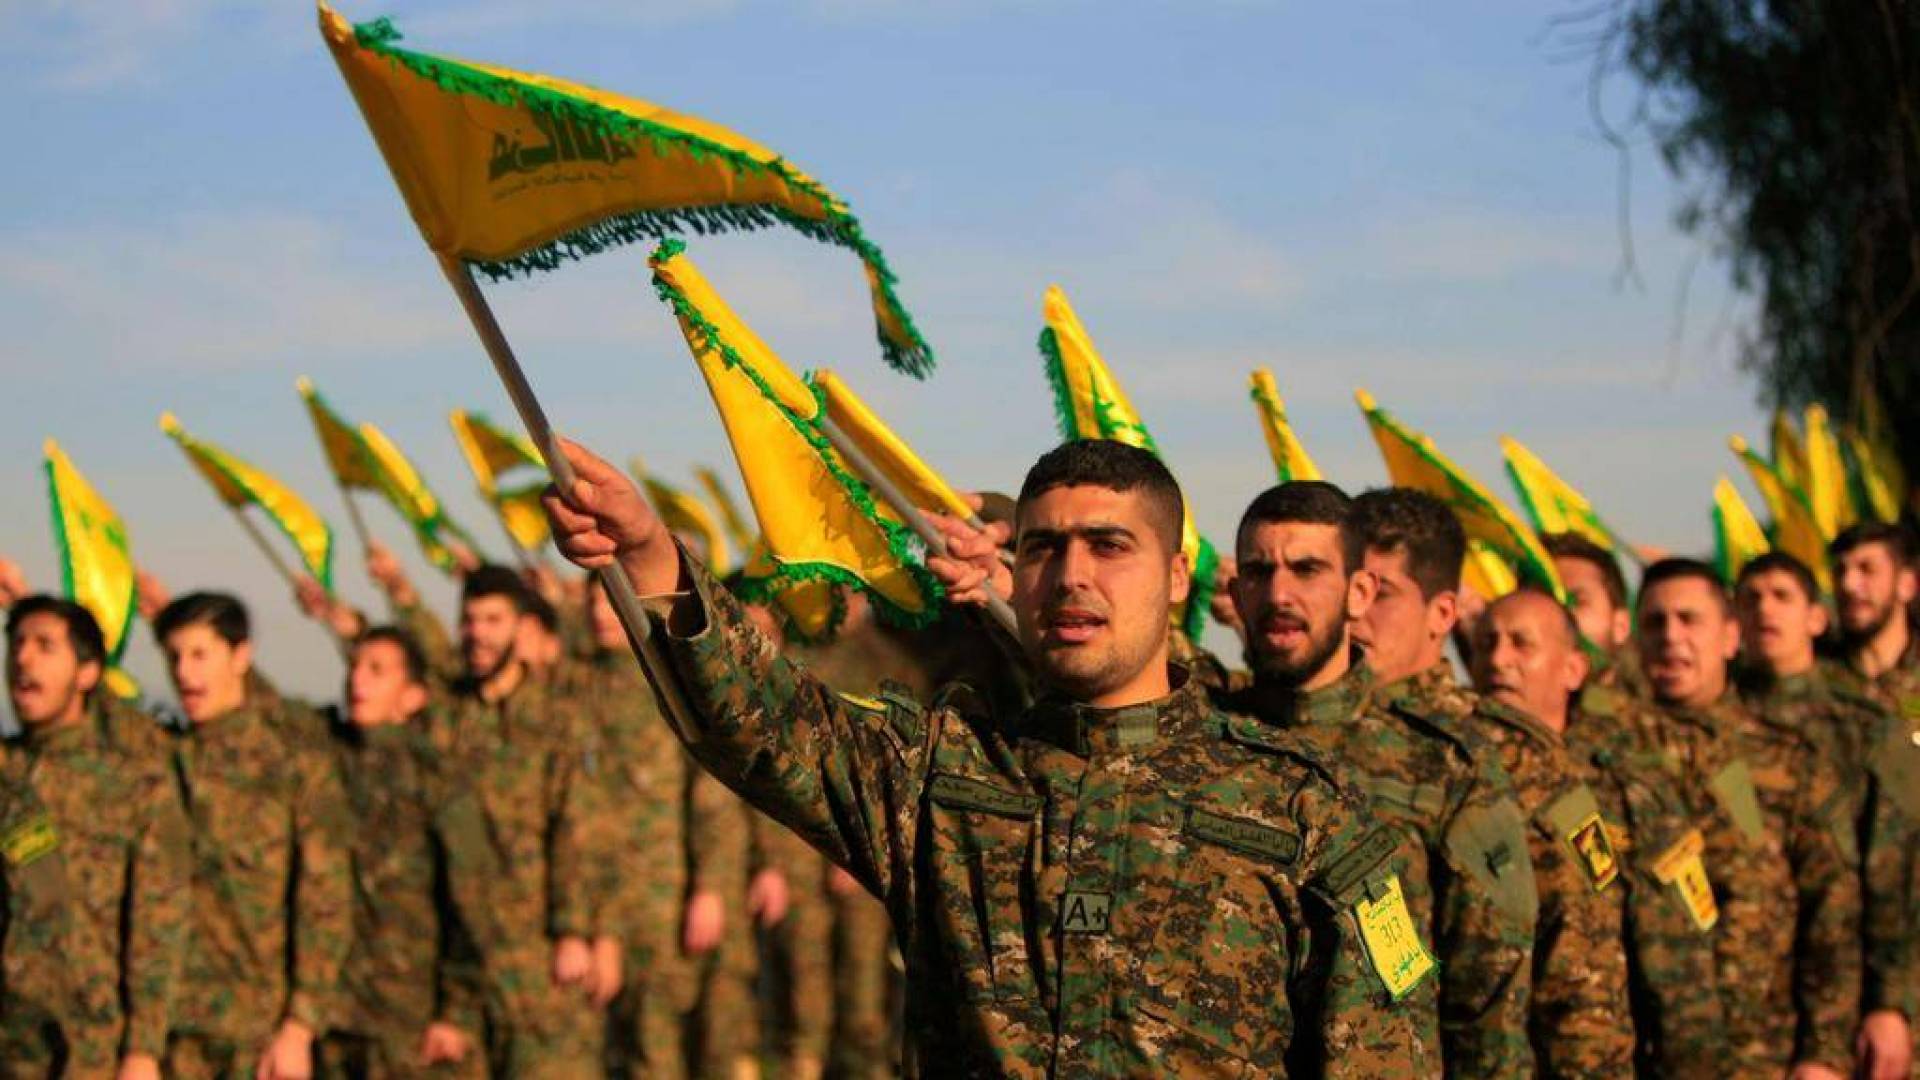 الحكومة البريطانية تحظر "حزب الله" وتصنفه منظمة إرهابية